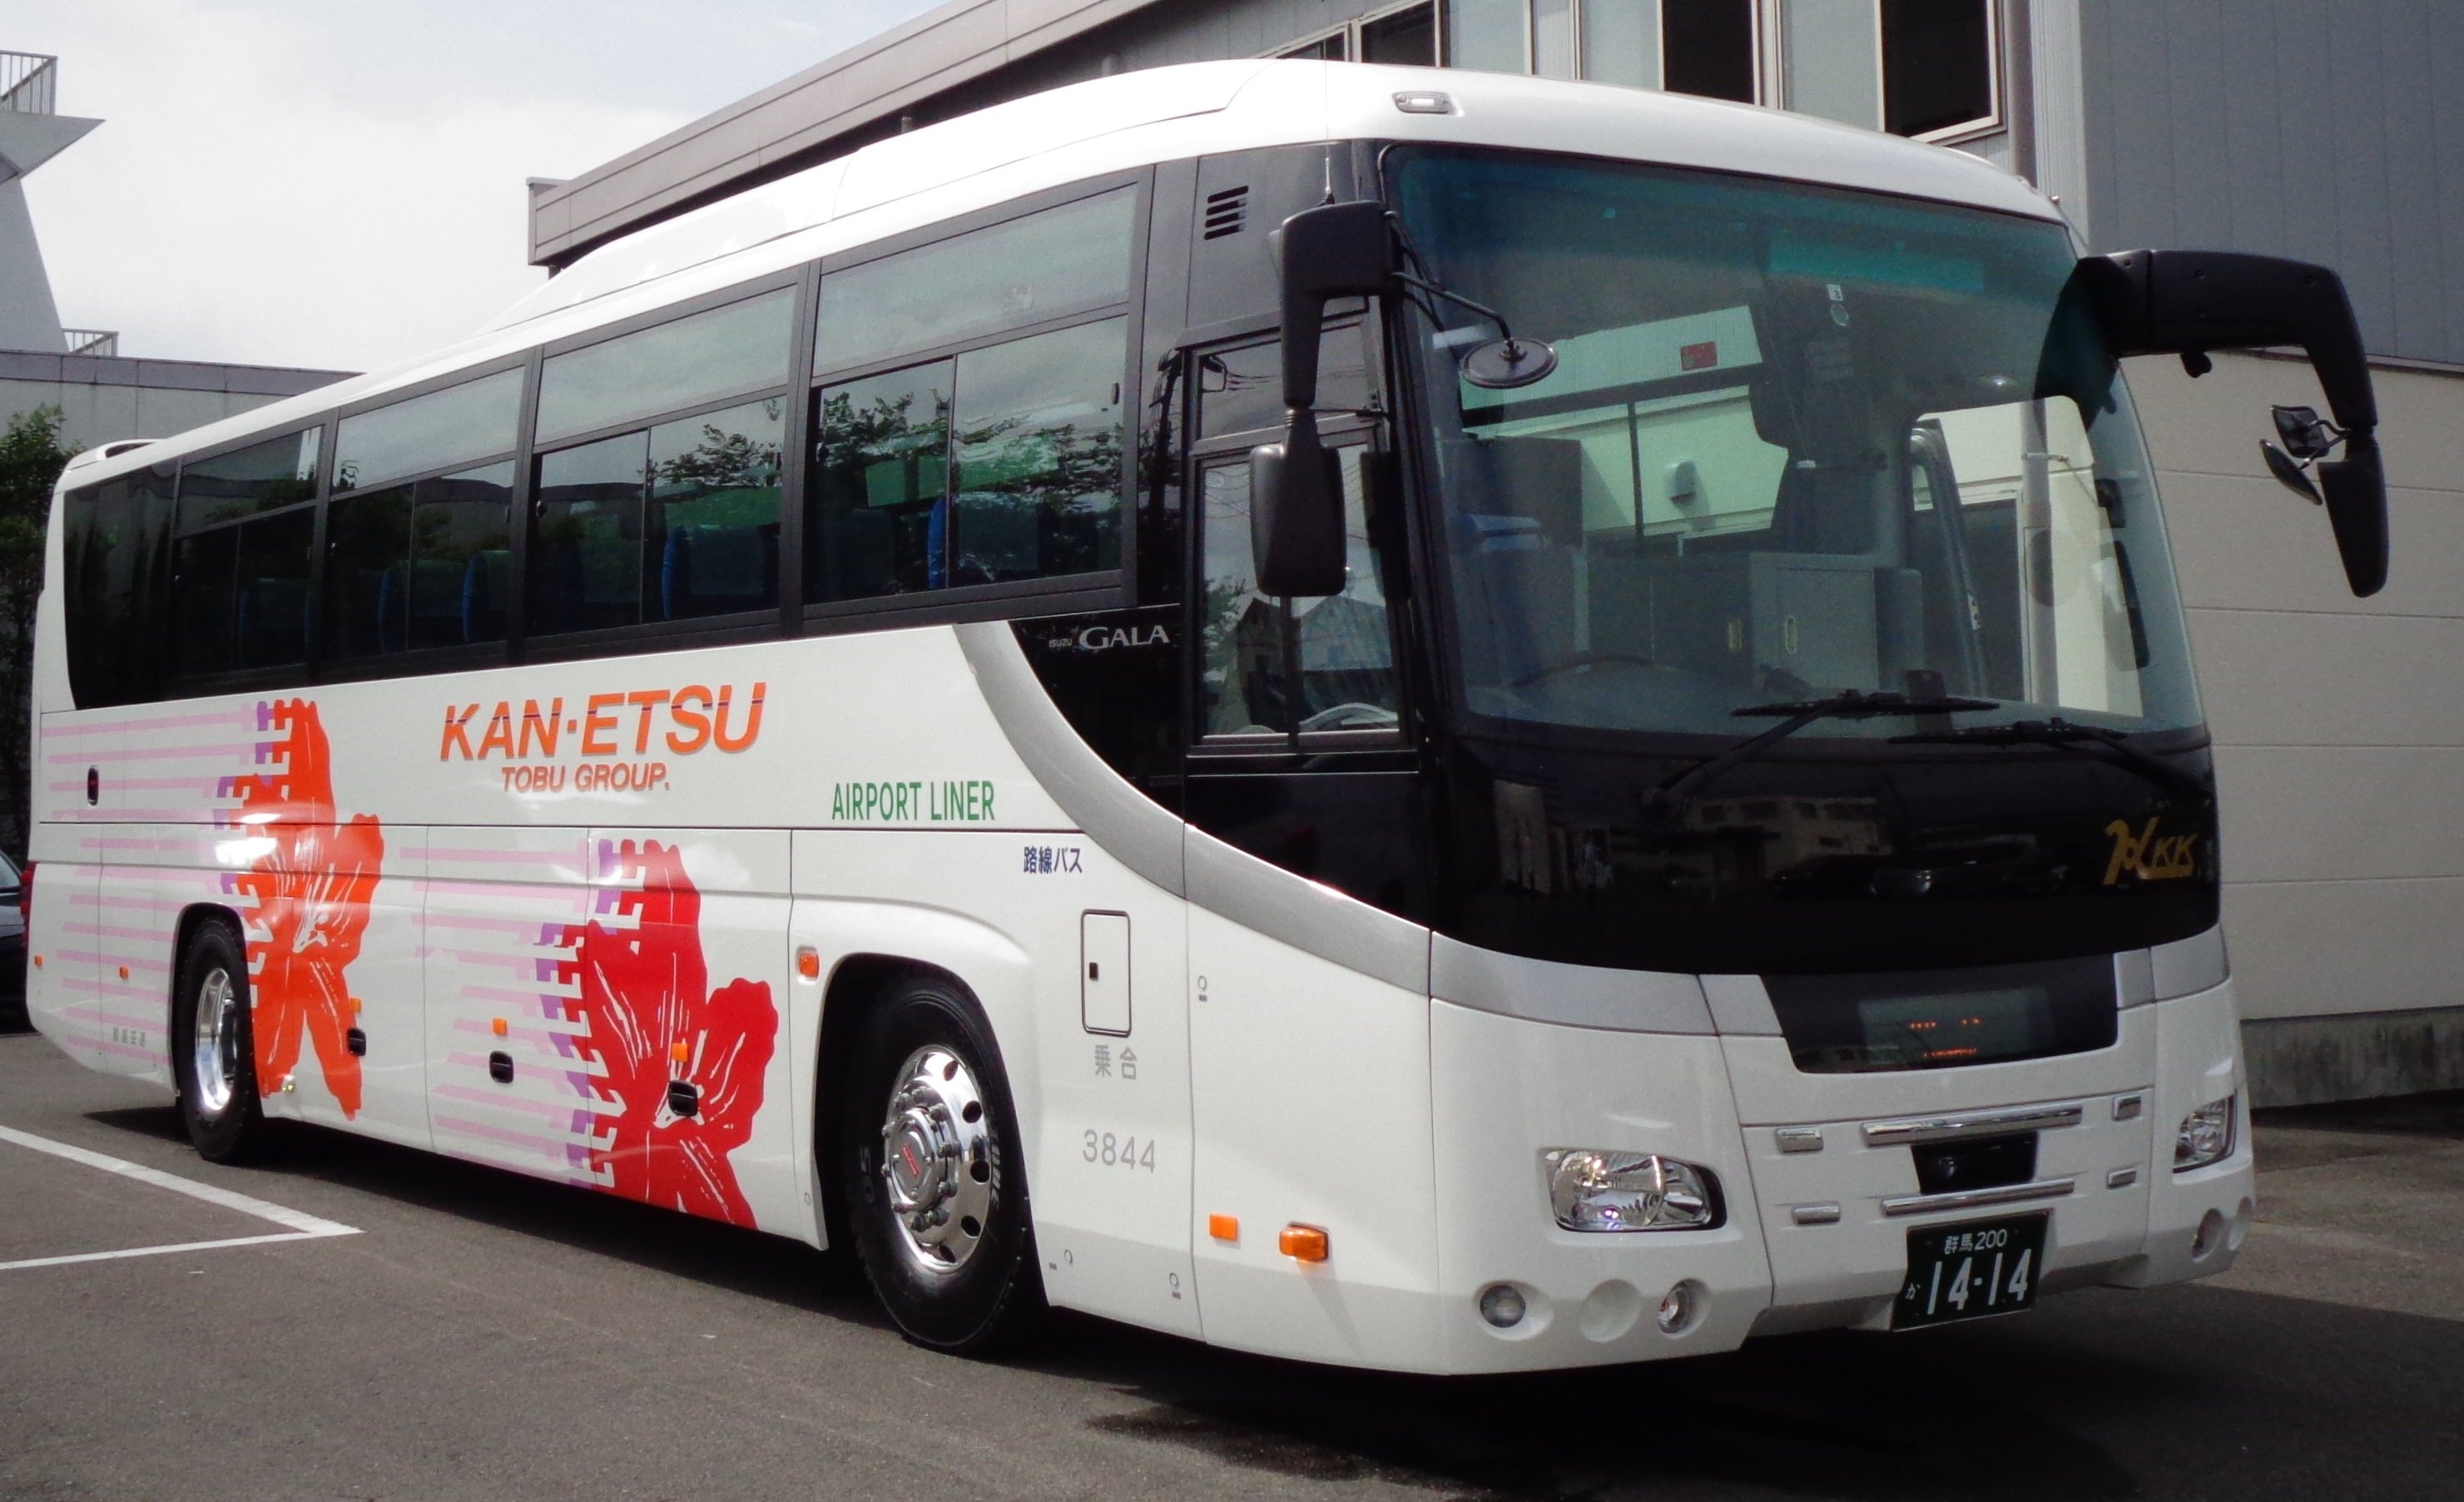 関越交通の新しい「温泉直行バス」